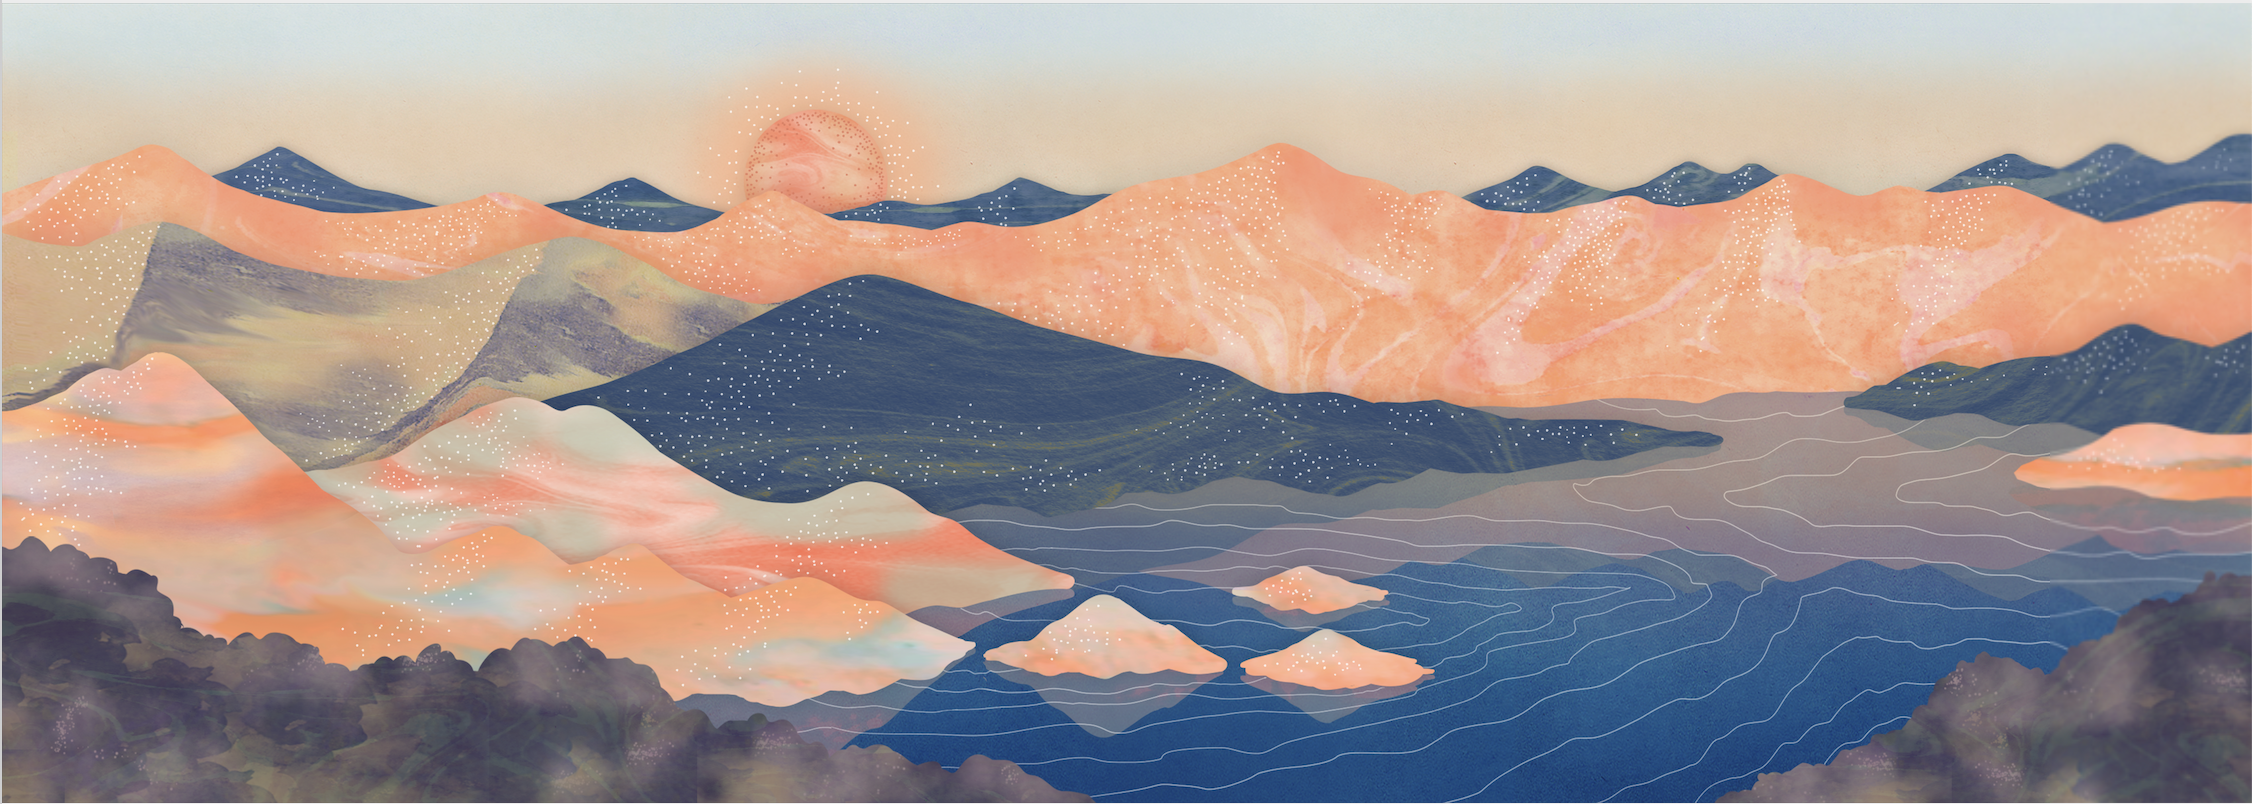 洞爺湖サイロ展望台からの景色、山イラスト・マーブリング アート